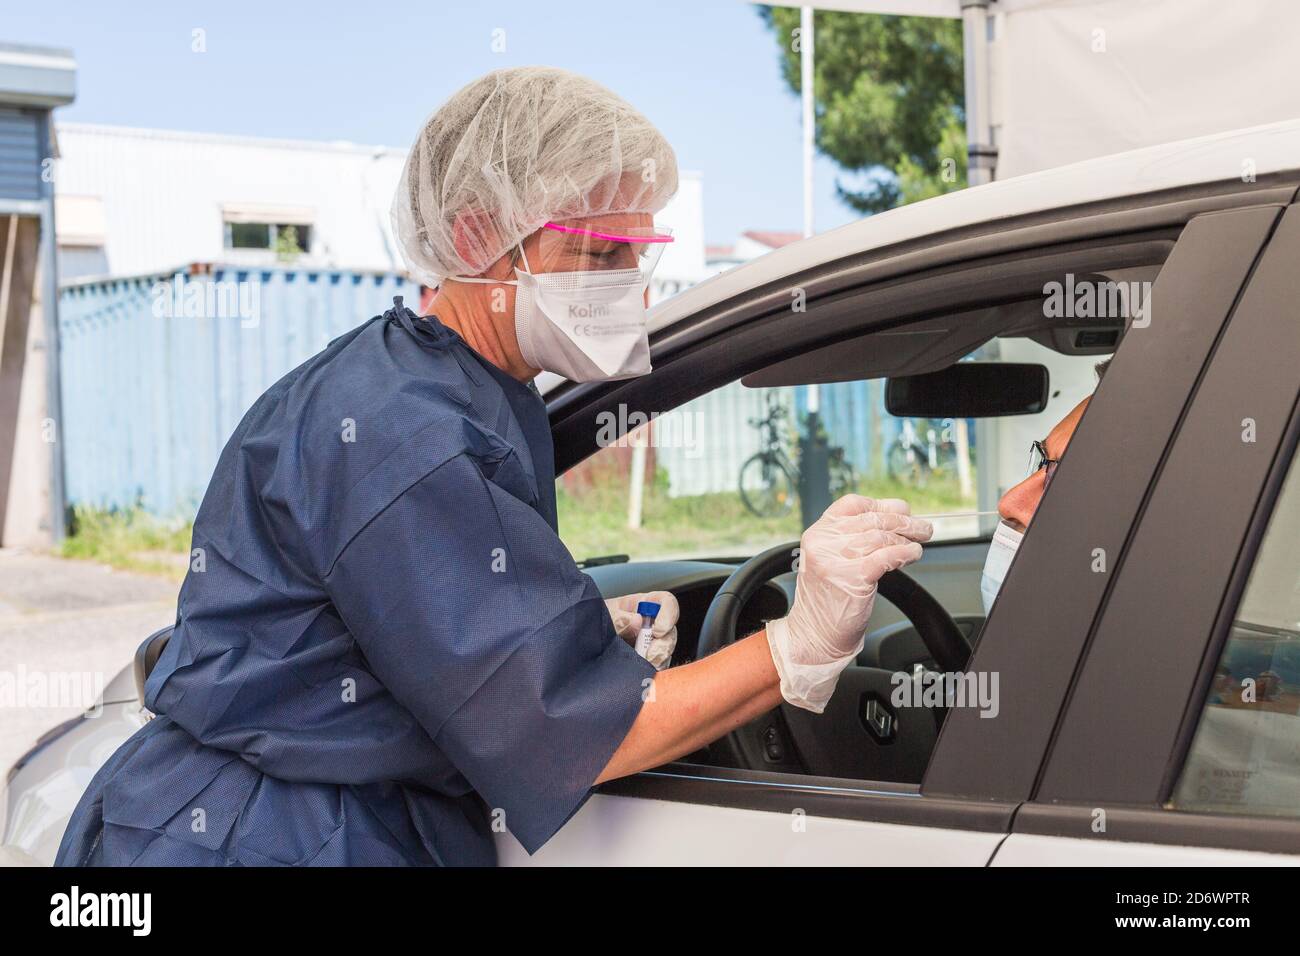 Test di guida, test di screening PCR Covid 19, tampone nasale, Bordeaux, Francia, maggio 2020. Foto Stock